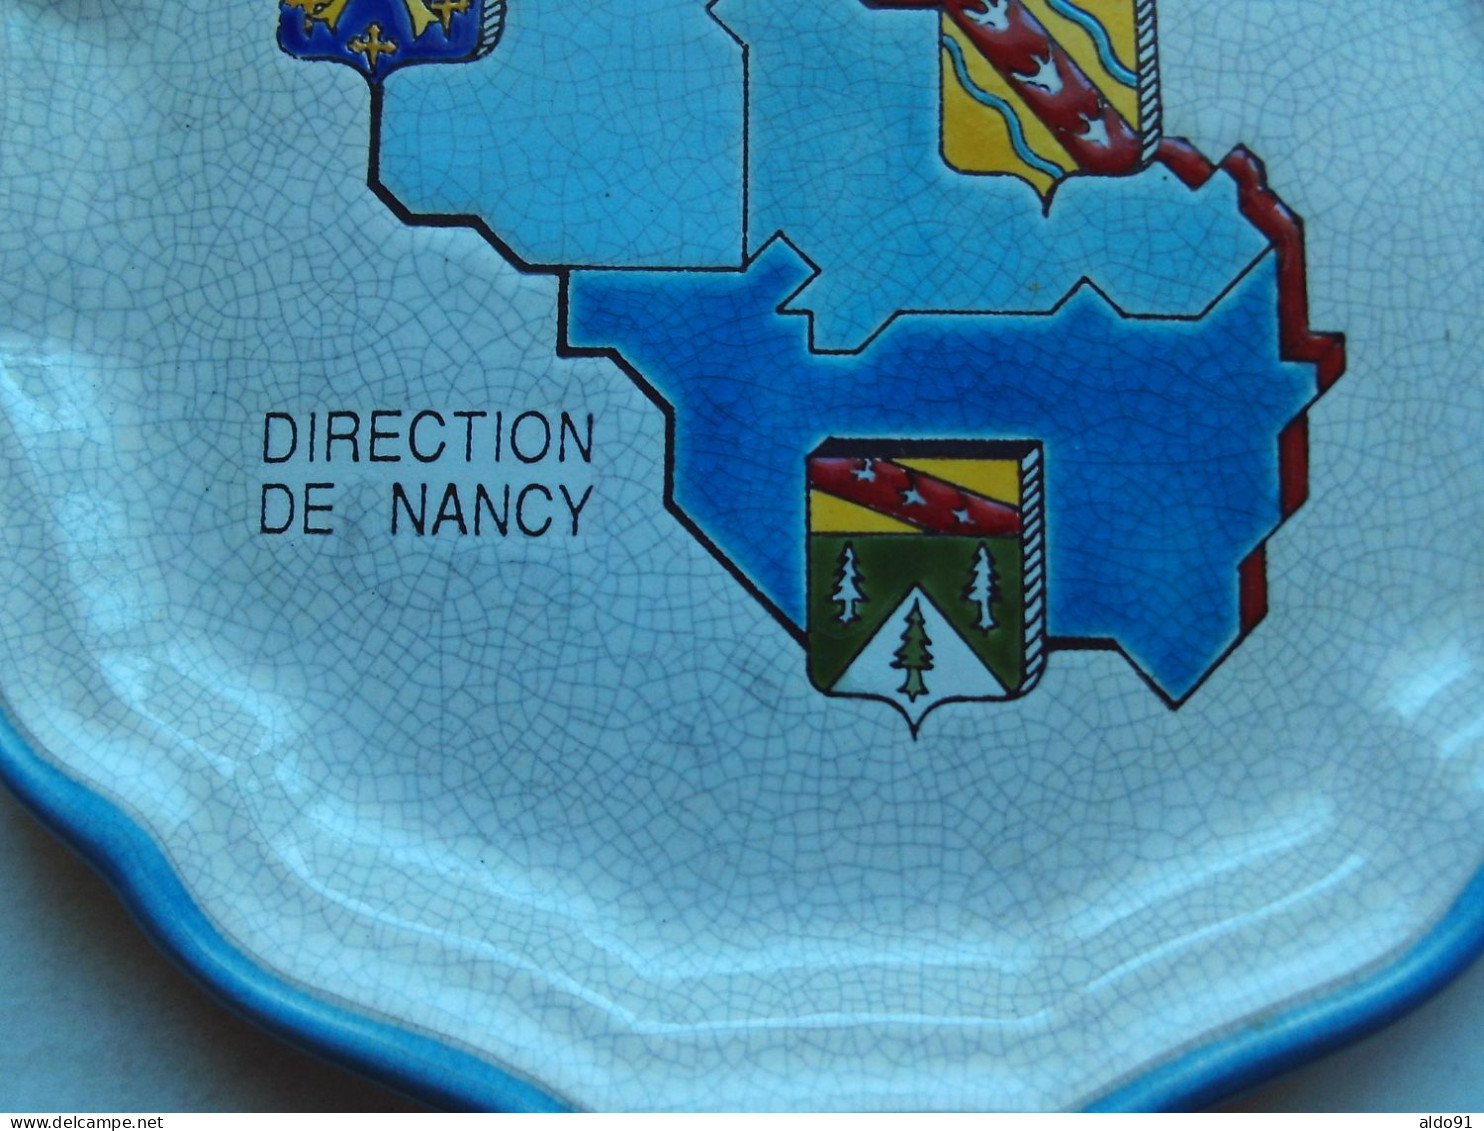 (Emaux De LONGWY) - Assiette Commémorative - FRANCE TELECOM -Direction De NANCY - 10/10/1992 à Pont à Mousson - Longwy (FRA)